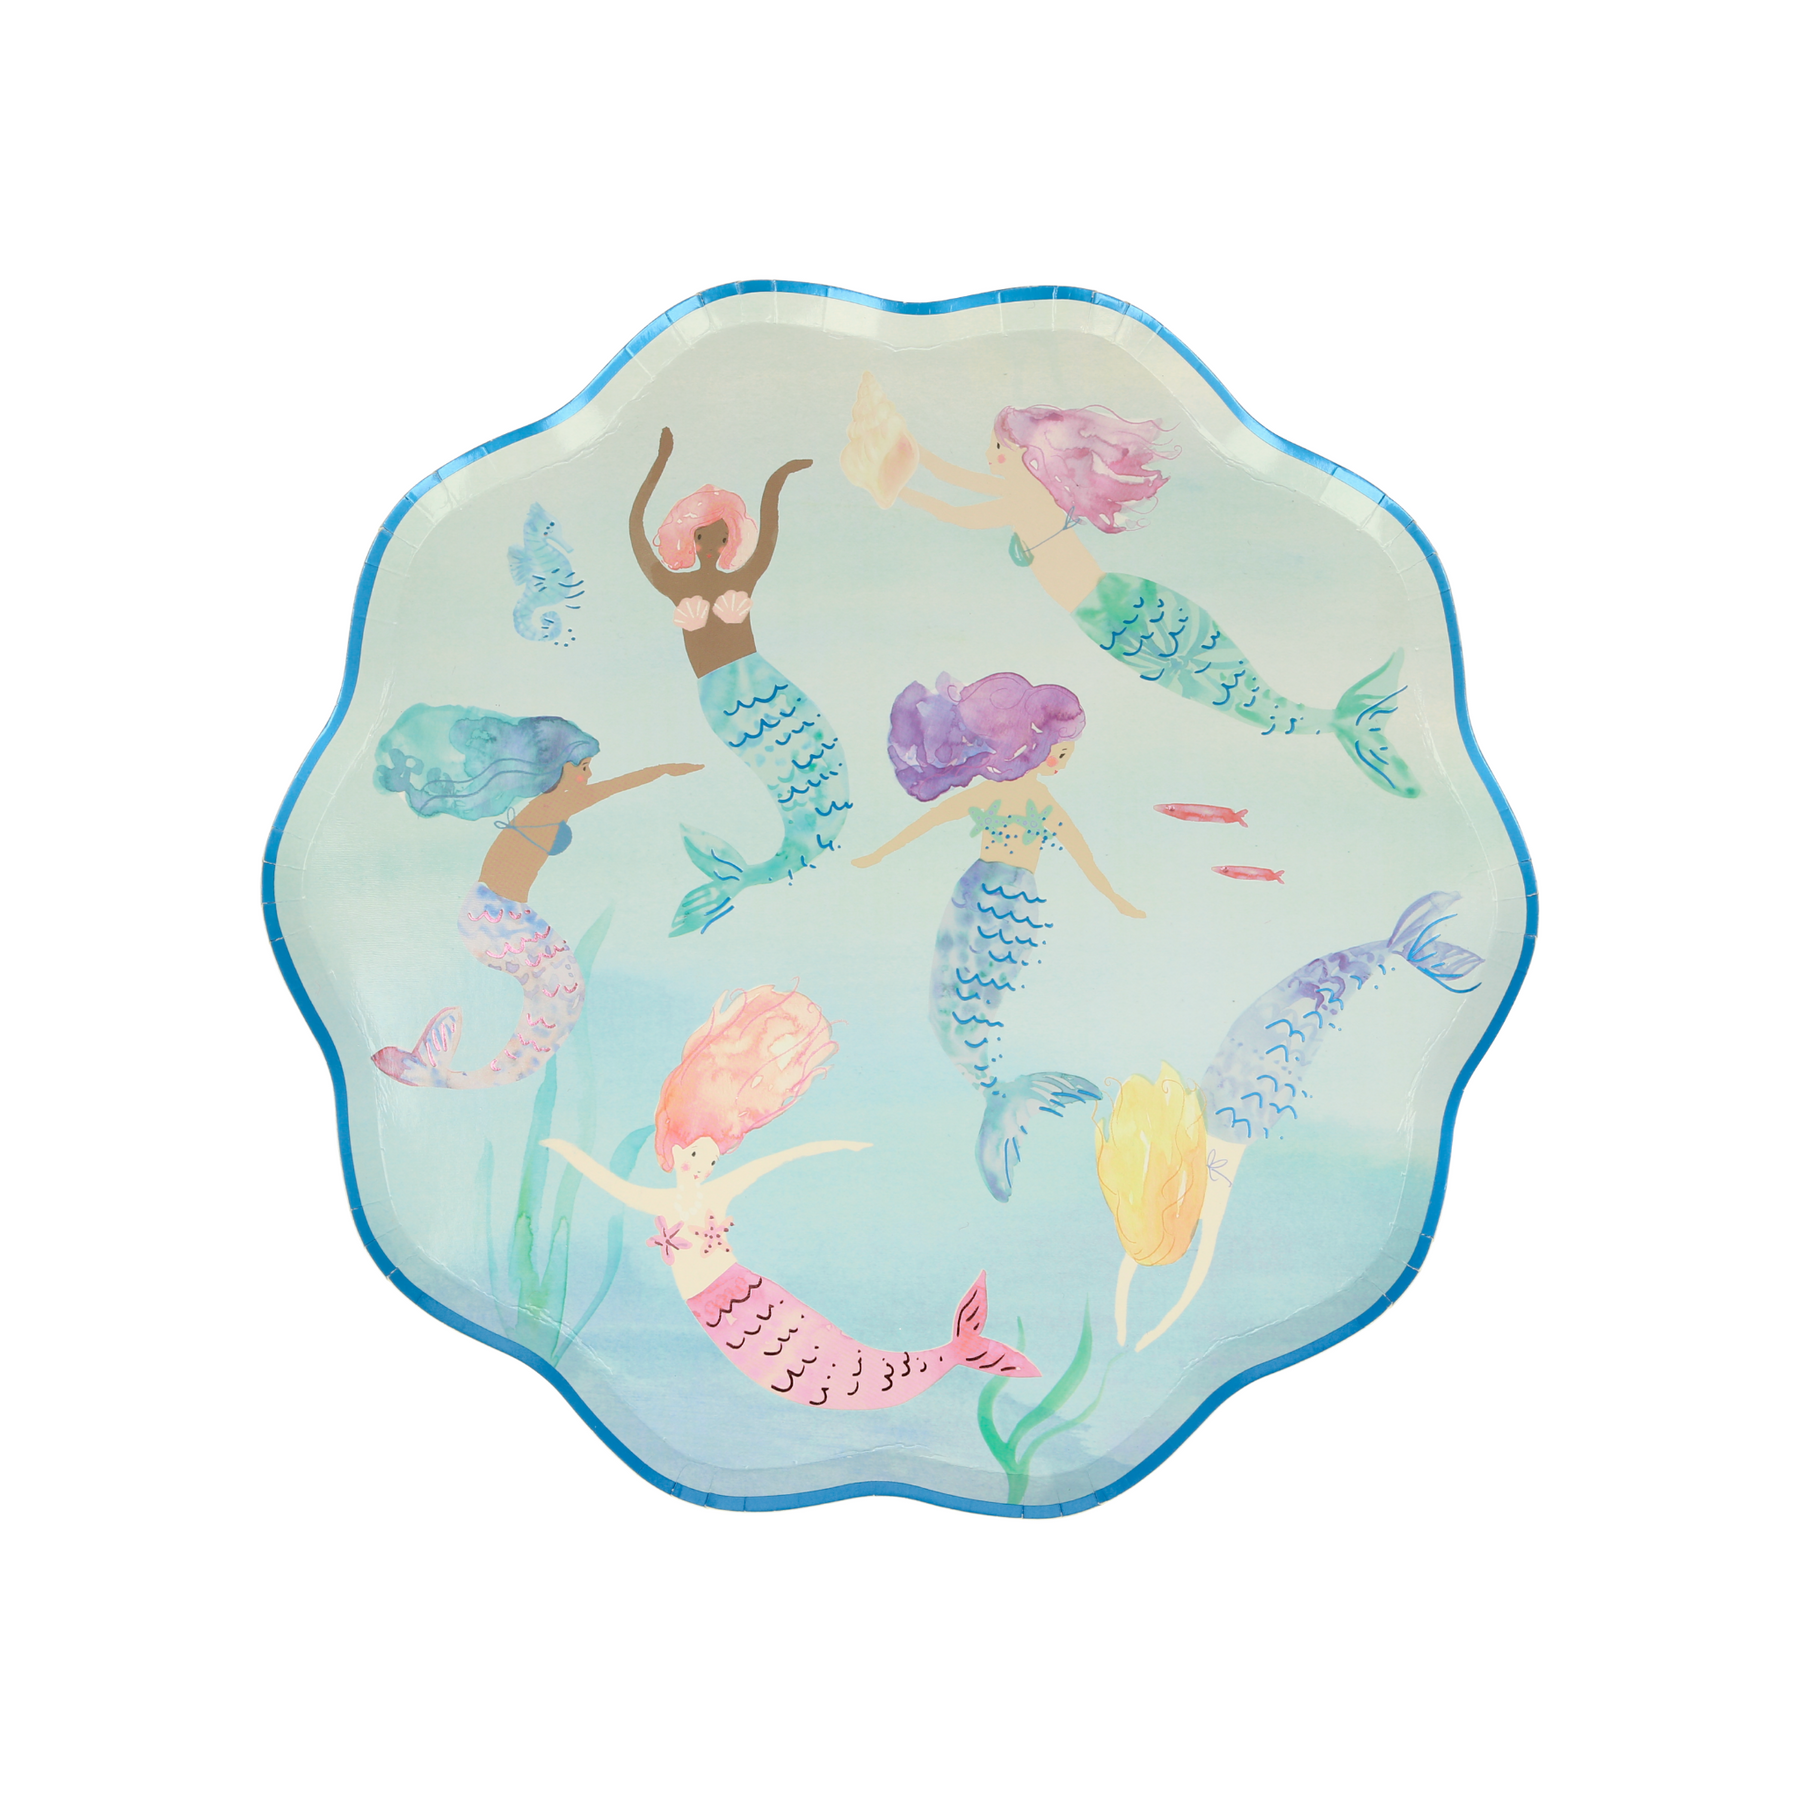 Mermaid Large Plates